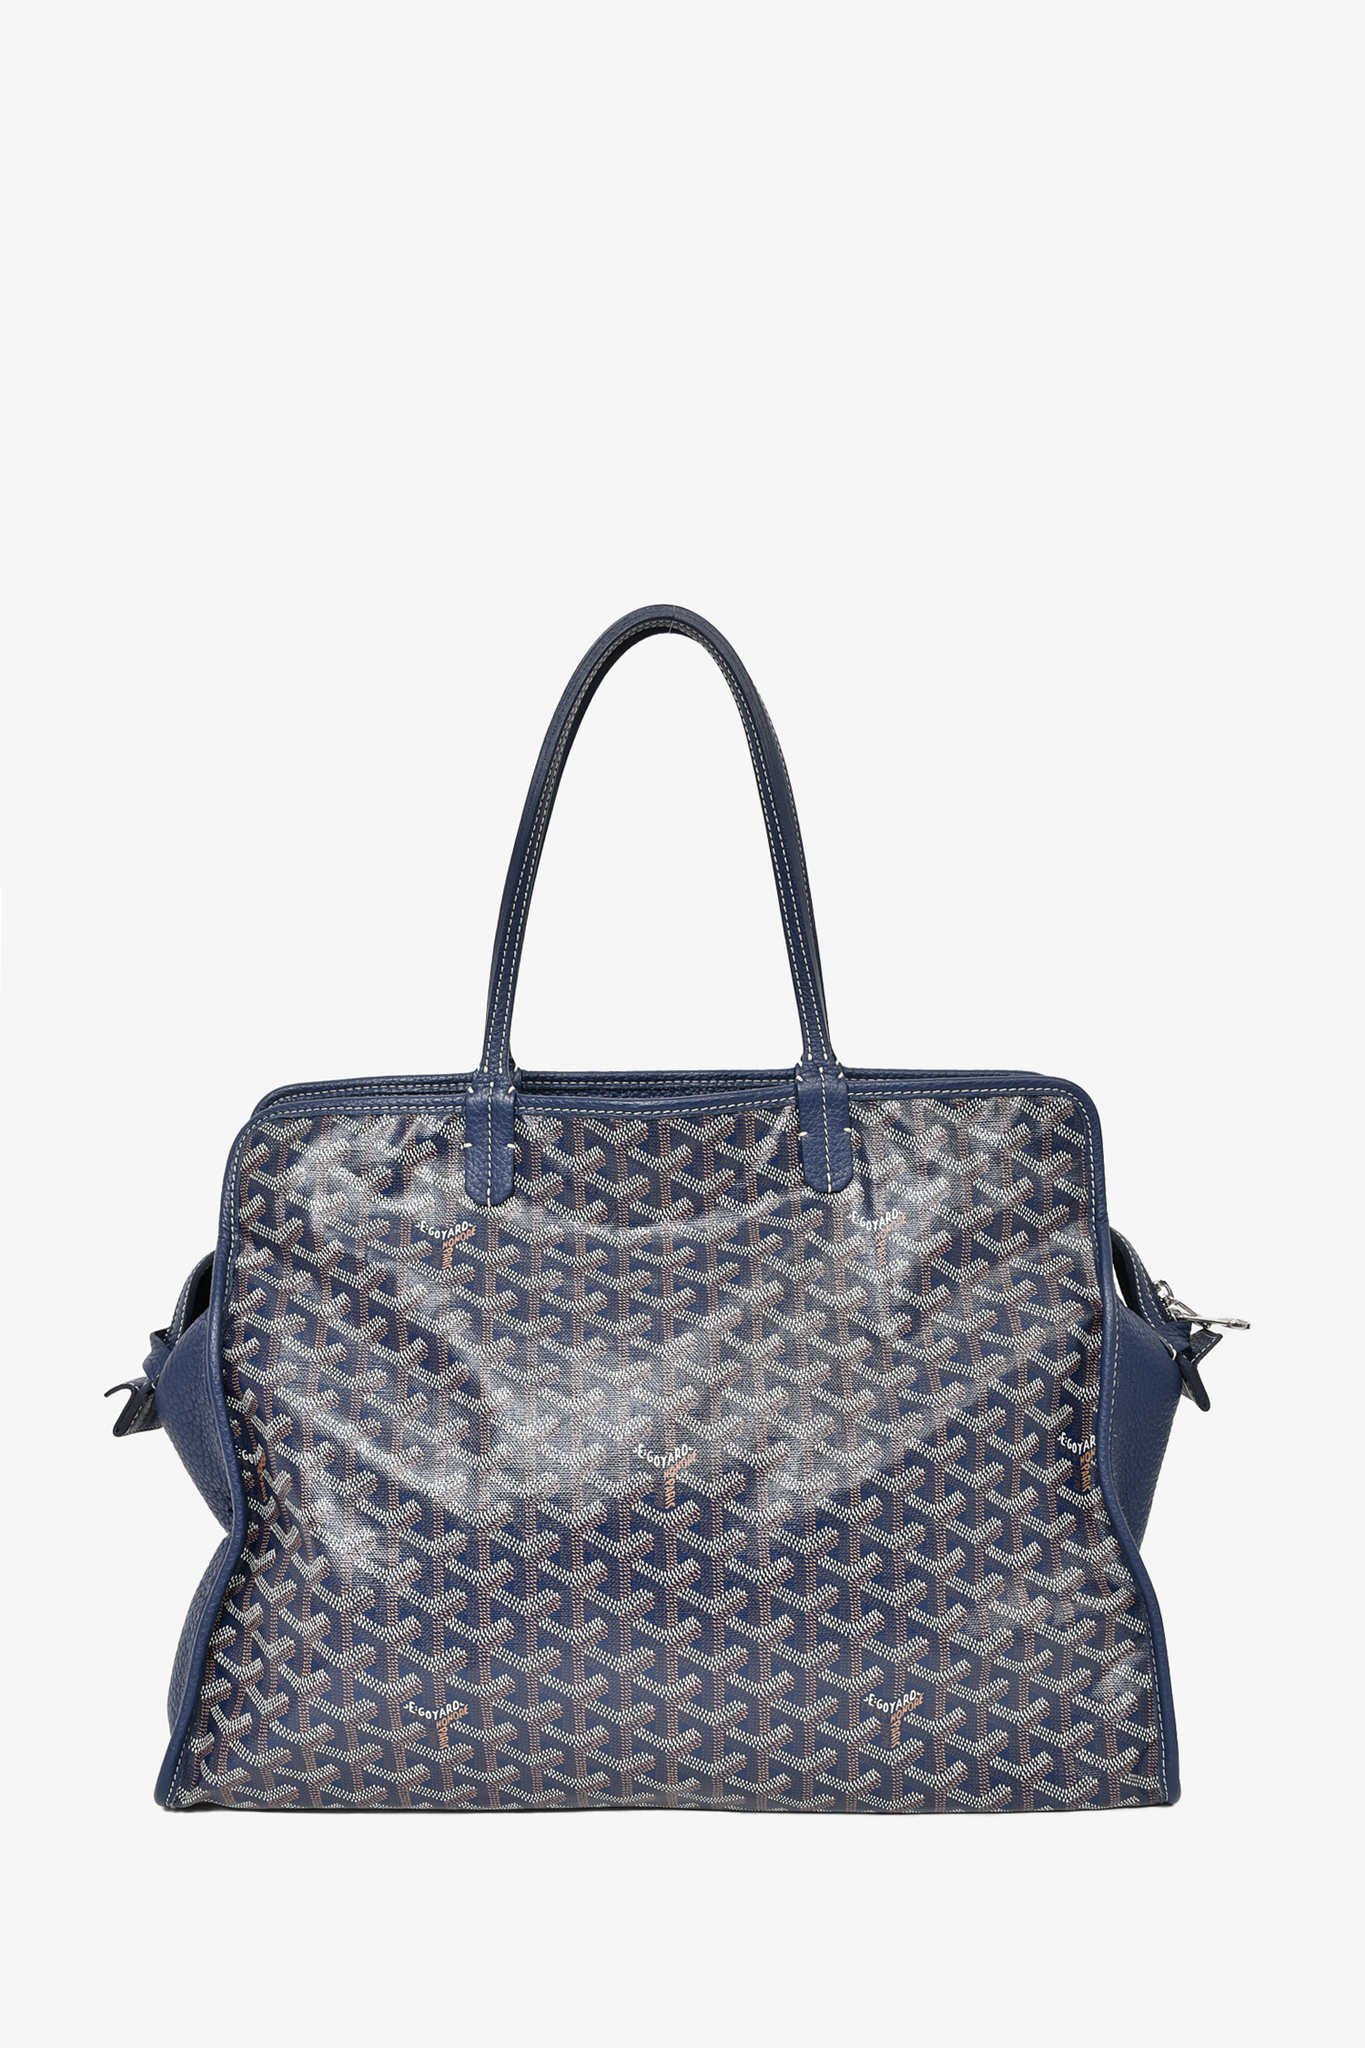 Goyard Goyardine Sac Hardy - Blue Totes, Handbags - GOY37936